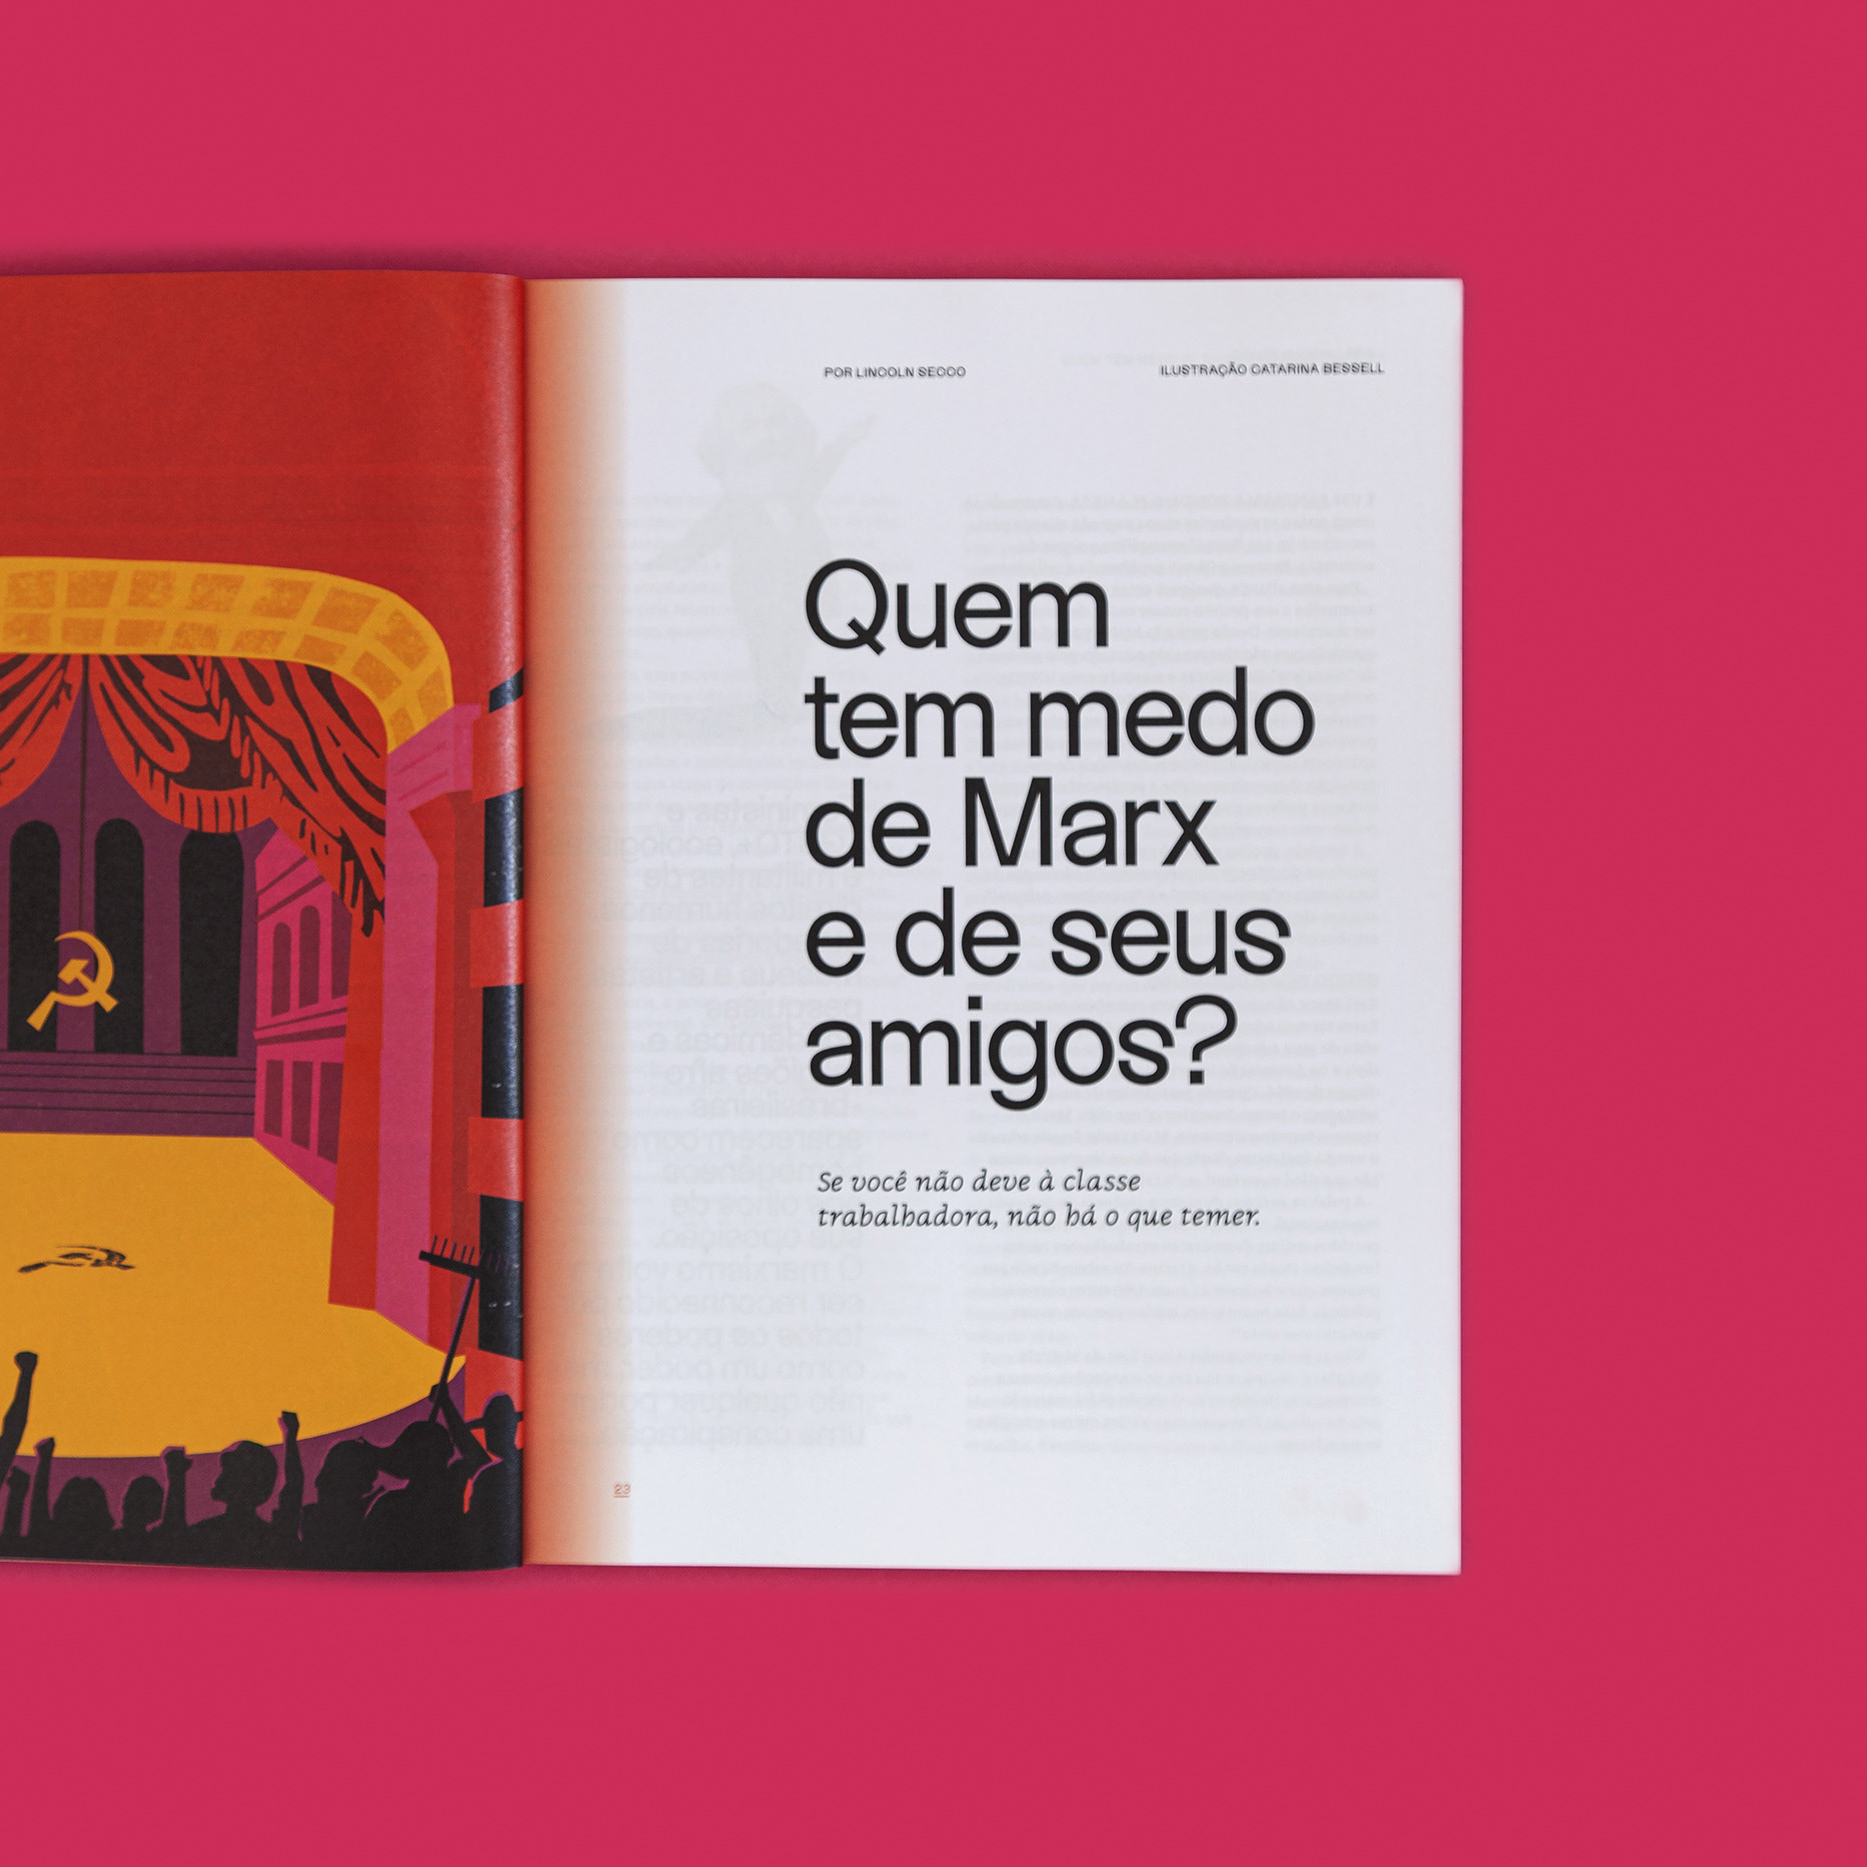 Jacobin Brasil magazine, 2019–21 - Fonts In Use